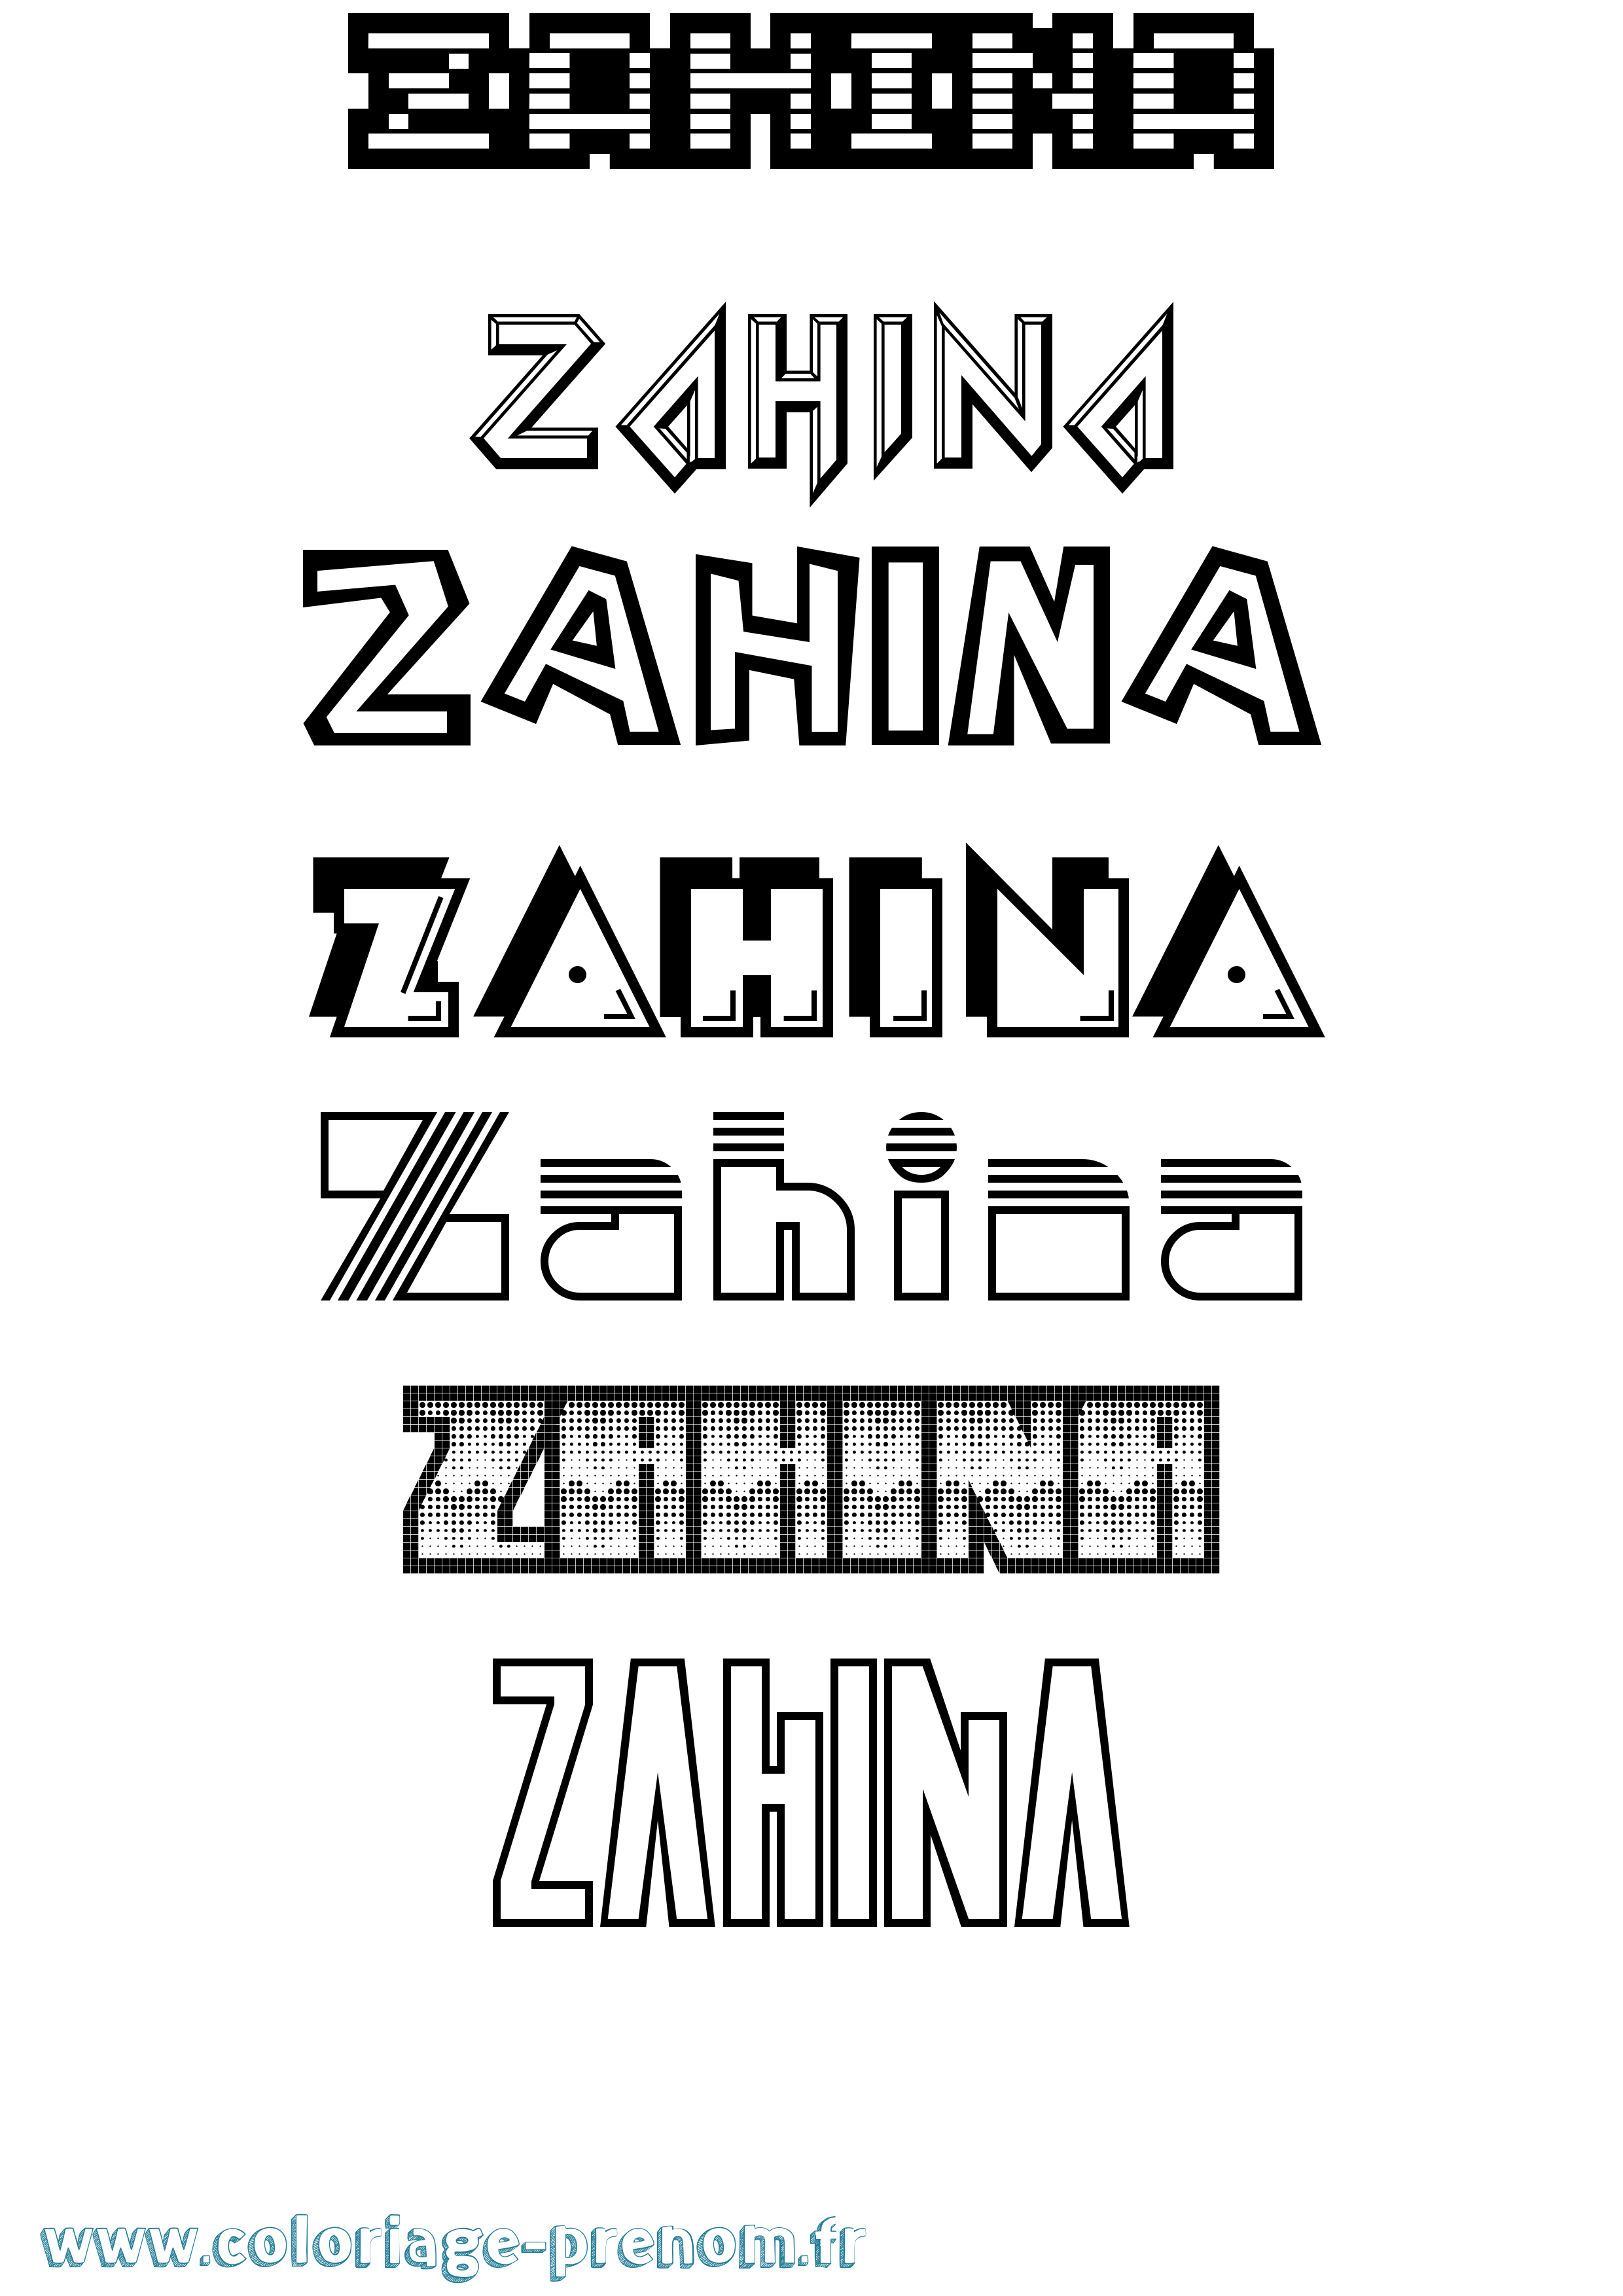 Coloriage prénom Zahina Jeux Vidéos